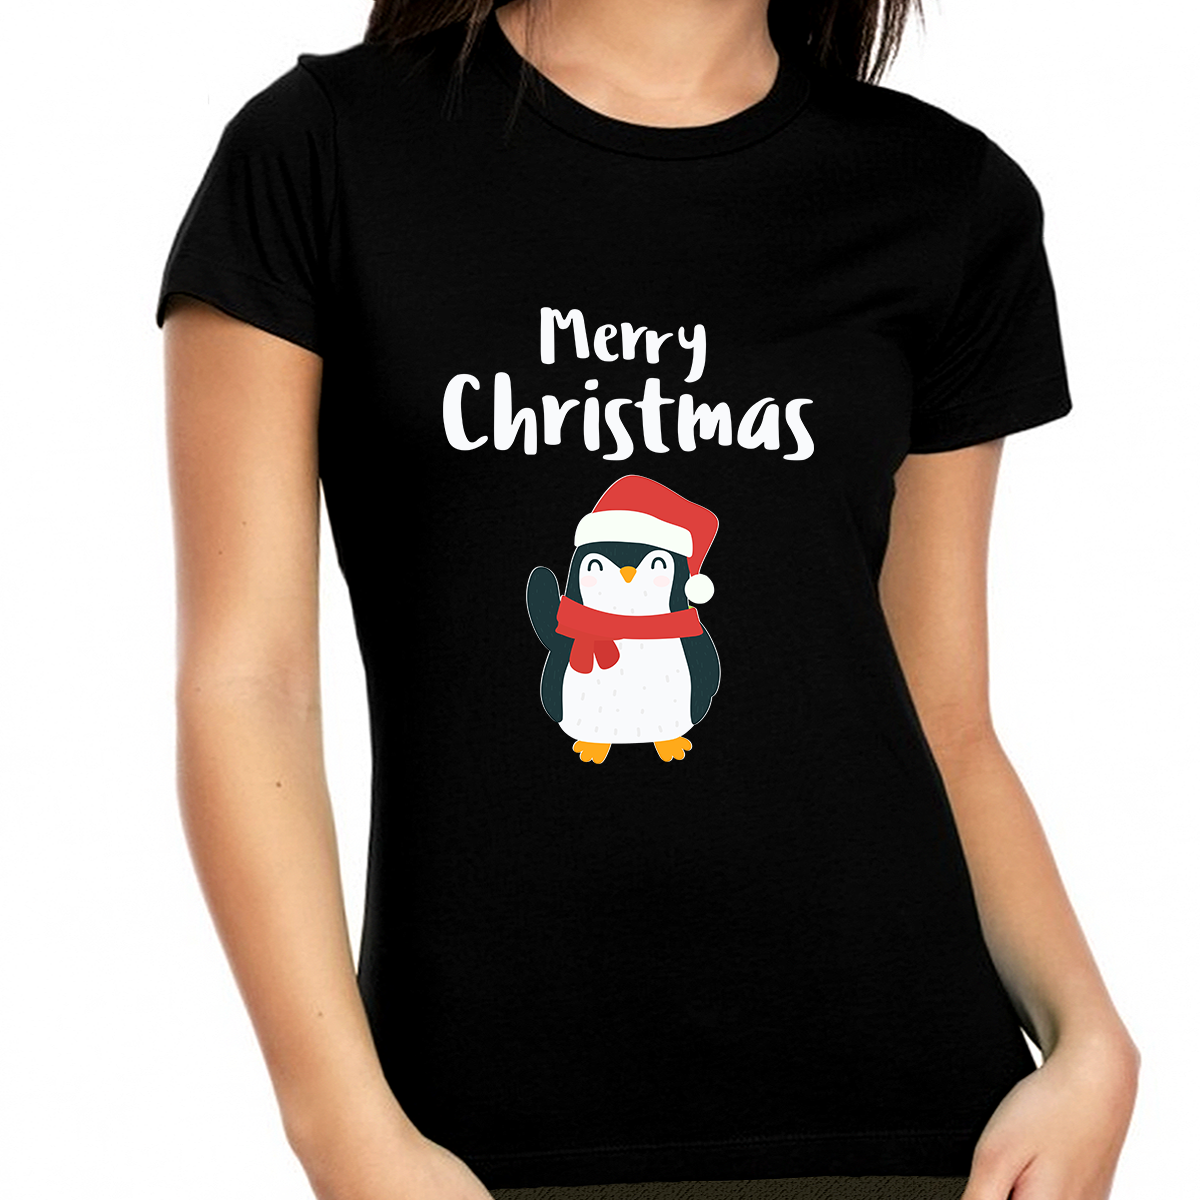 Santa Penguin Christmas Shirts for Women Funny Christmas T Shirts for Women Cute Womens Christmas Gift